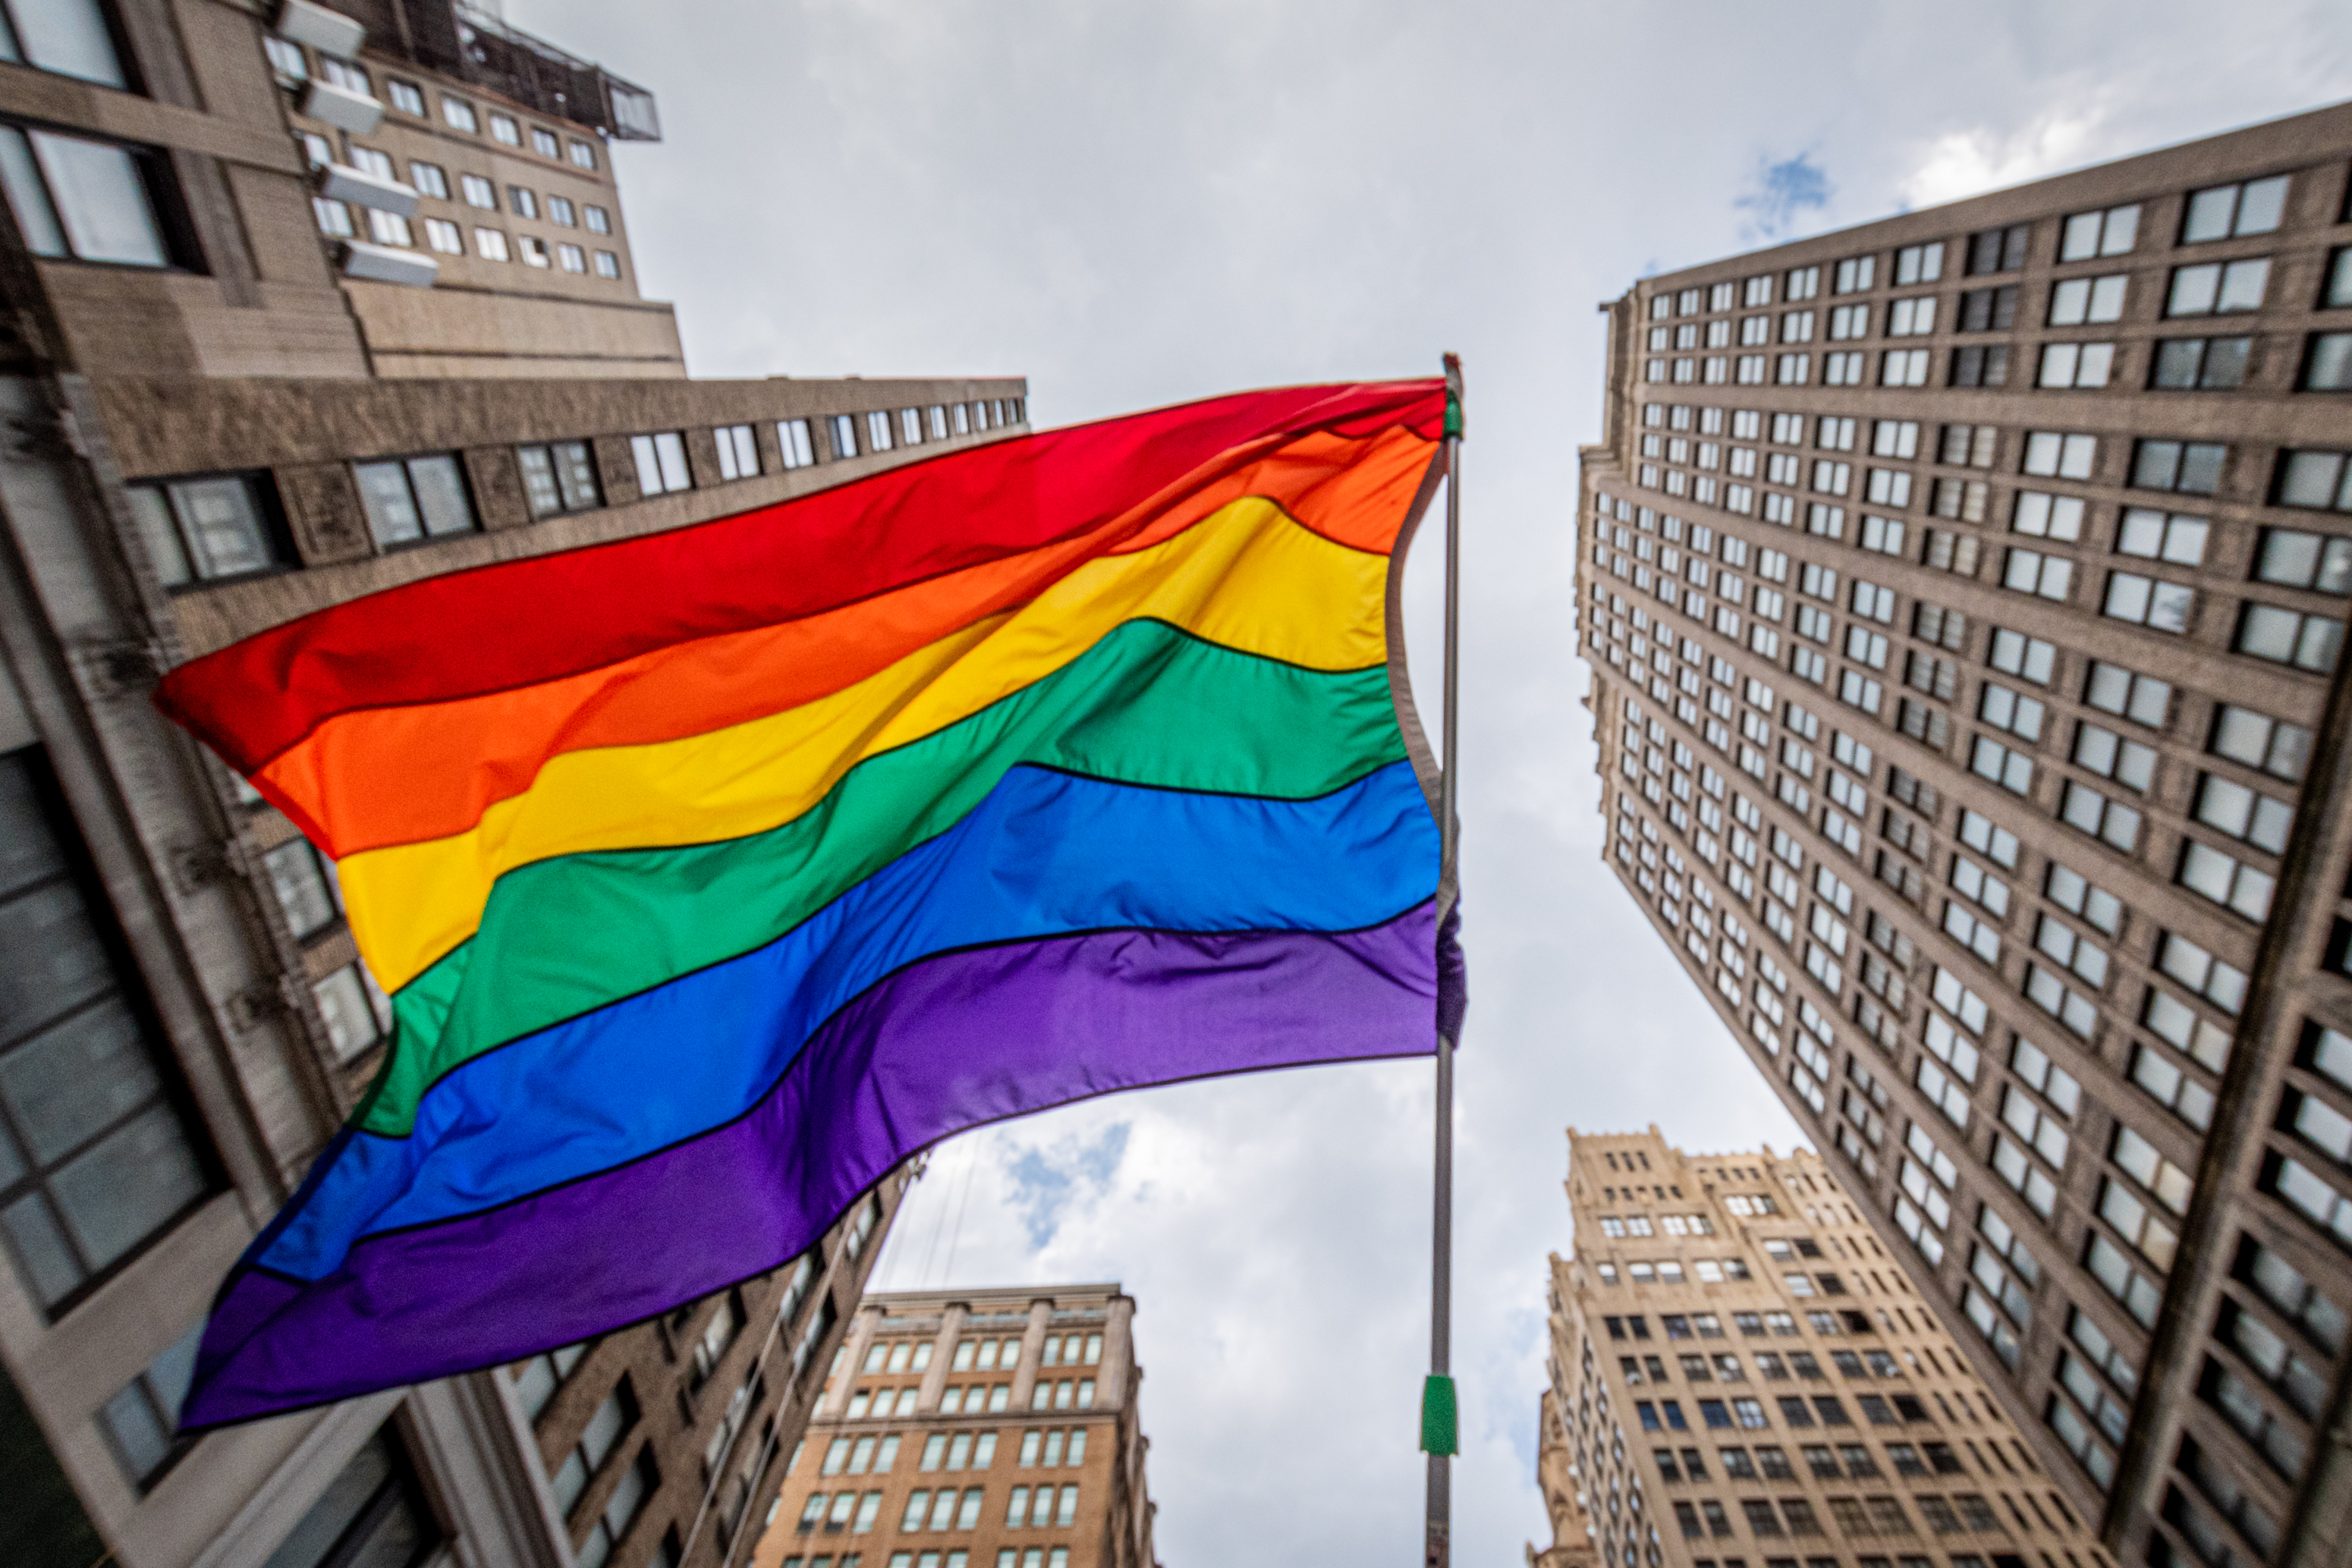 Exxon Ban on LGBTQ Pride Flag Triggers Employee Backlash